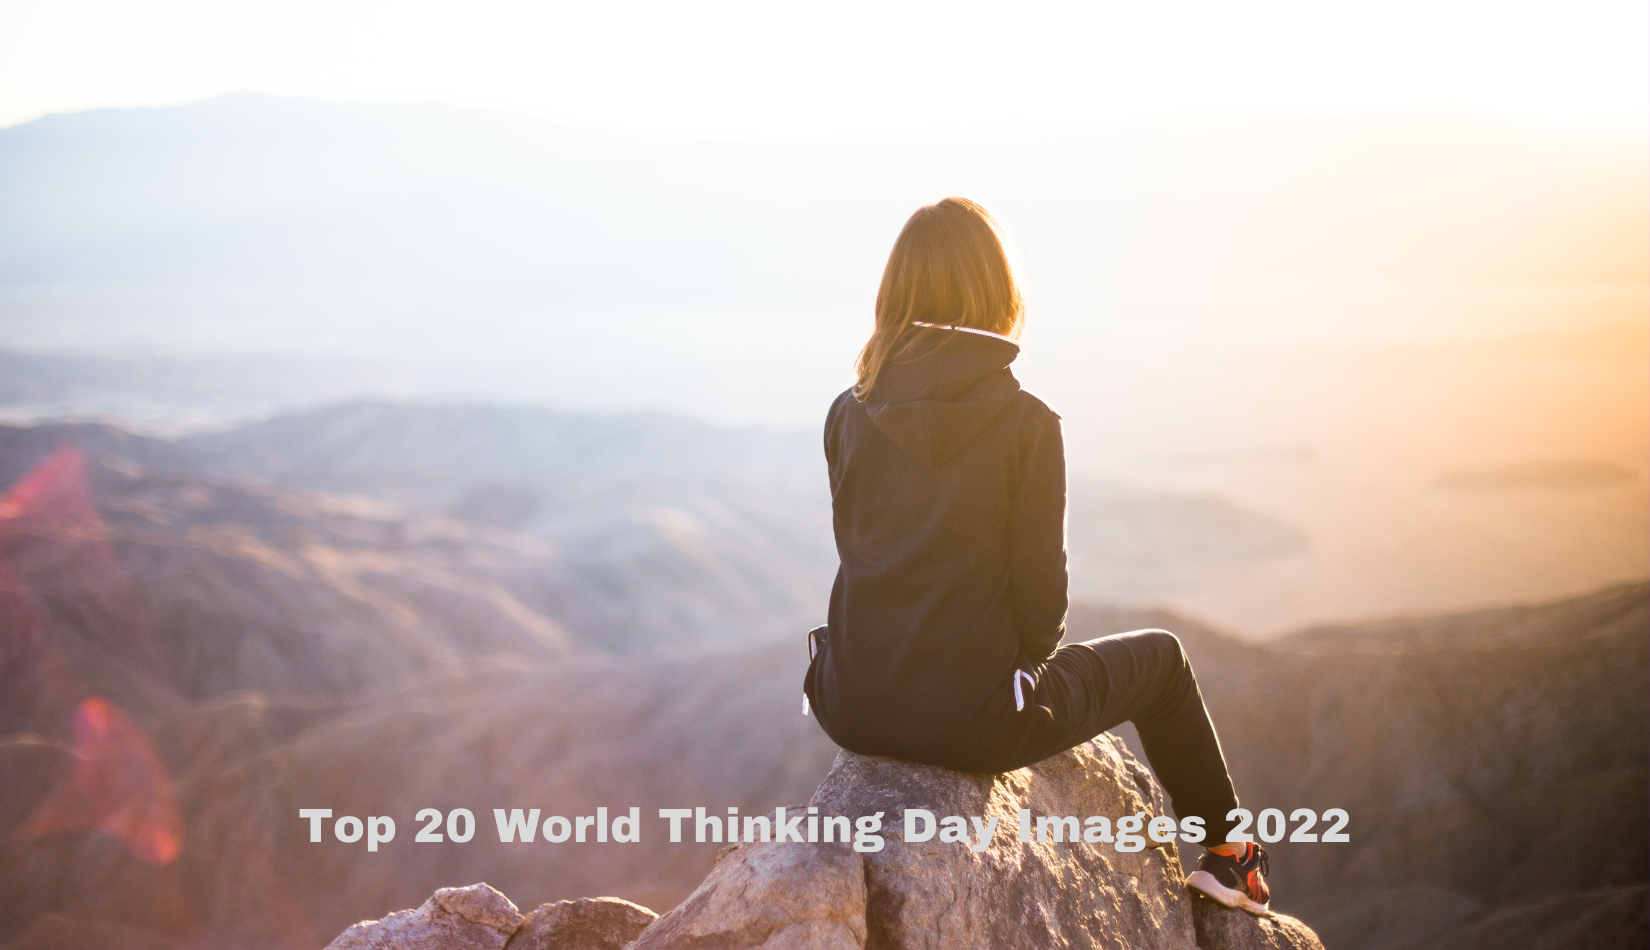 World Thinking Day Images 2022